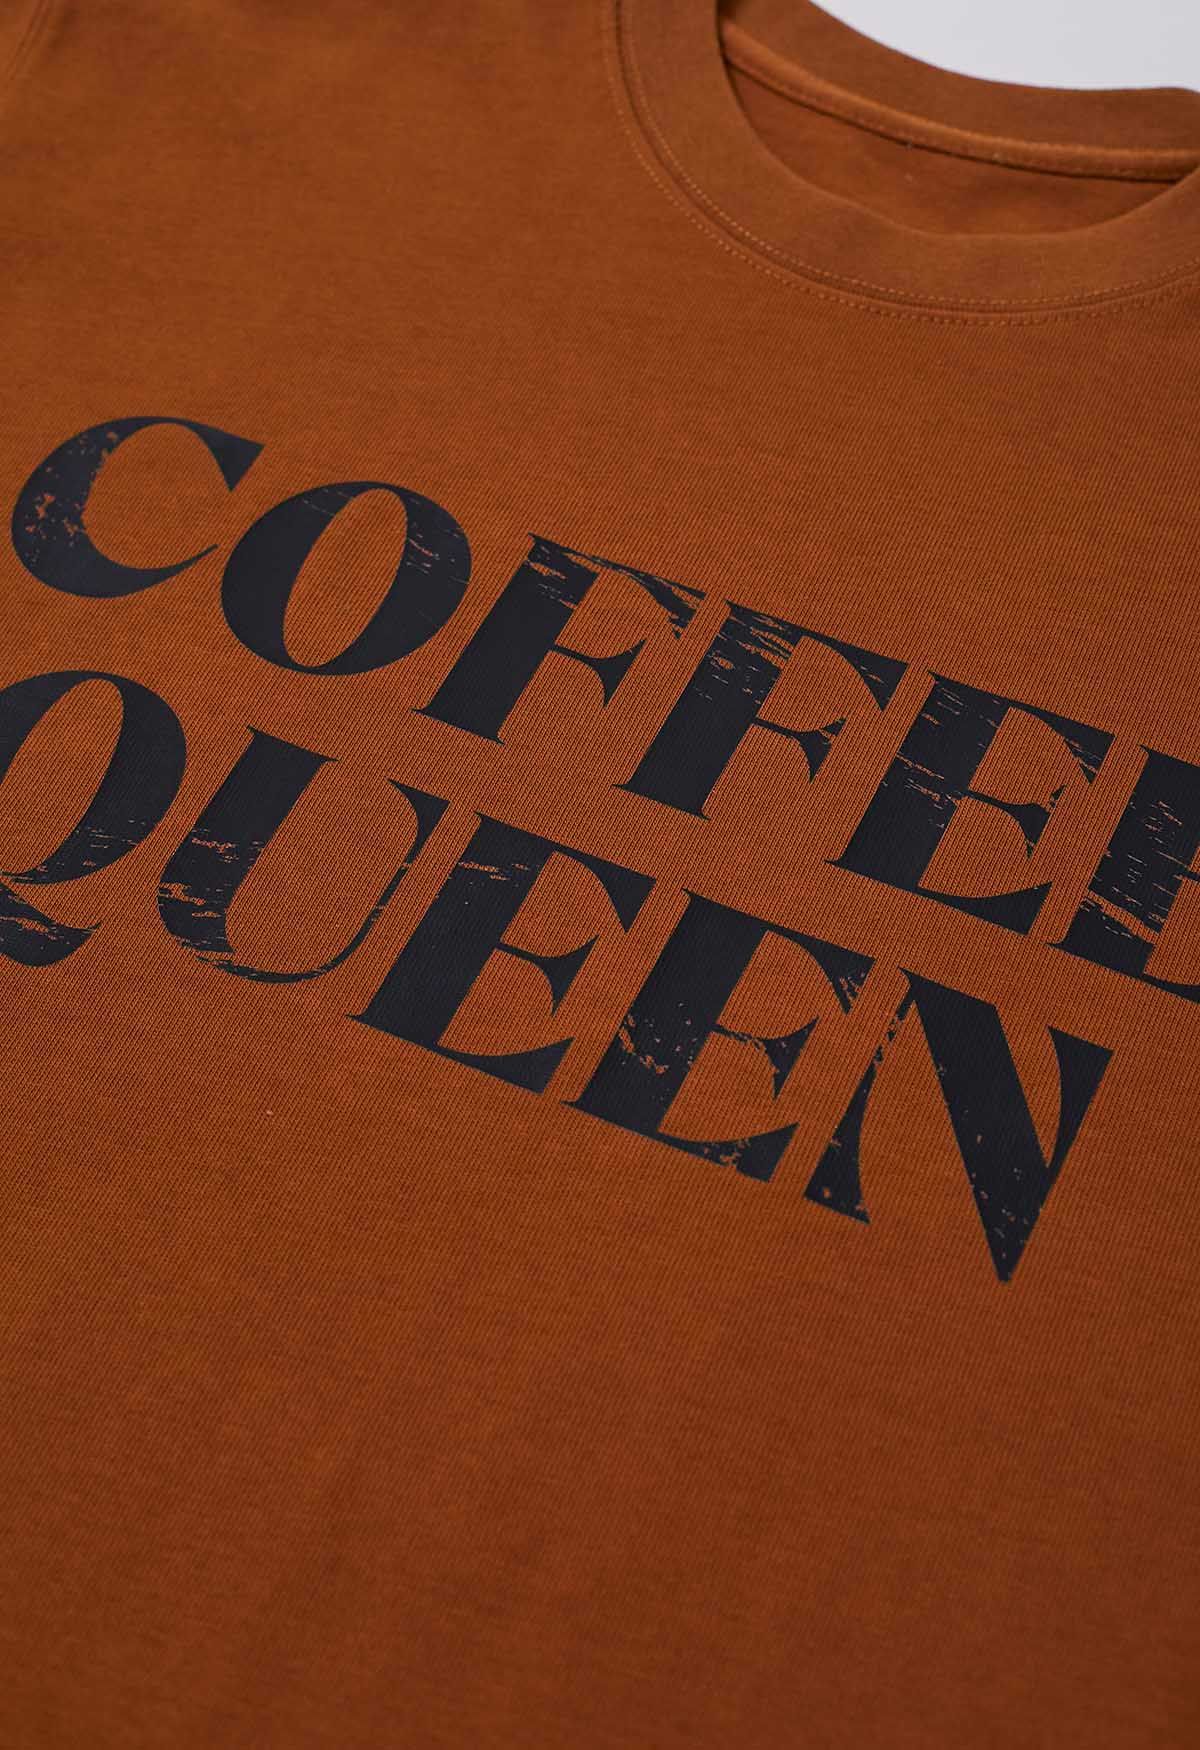 Bedrucktes Baumwoll-T-Shirt „Coffee Queen“ in Karamell